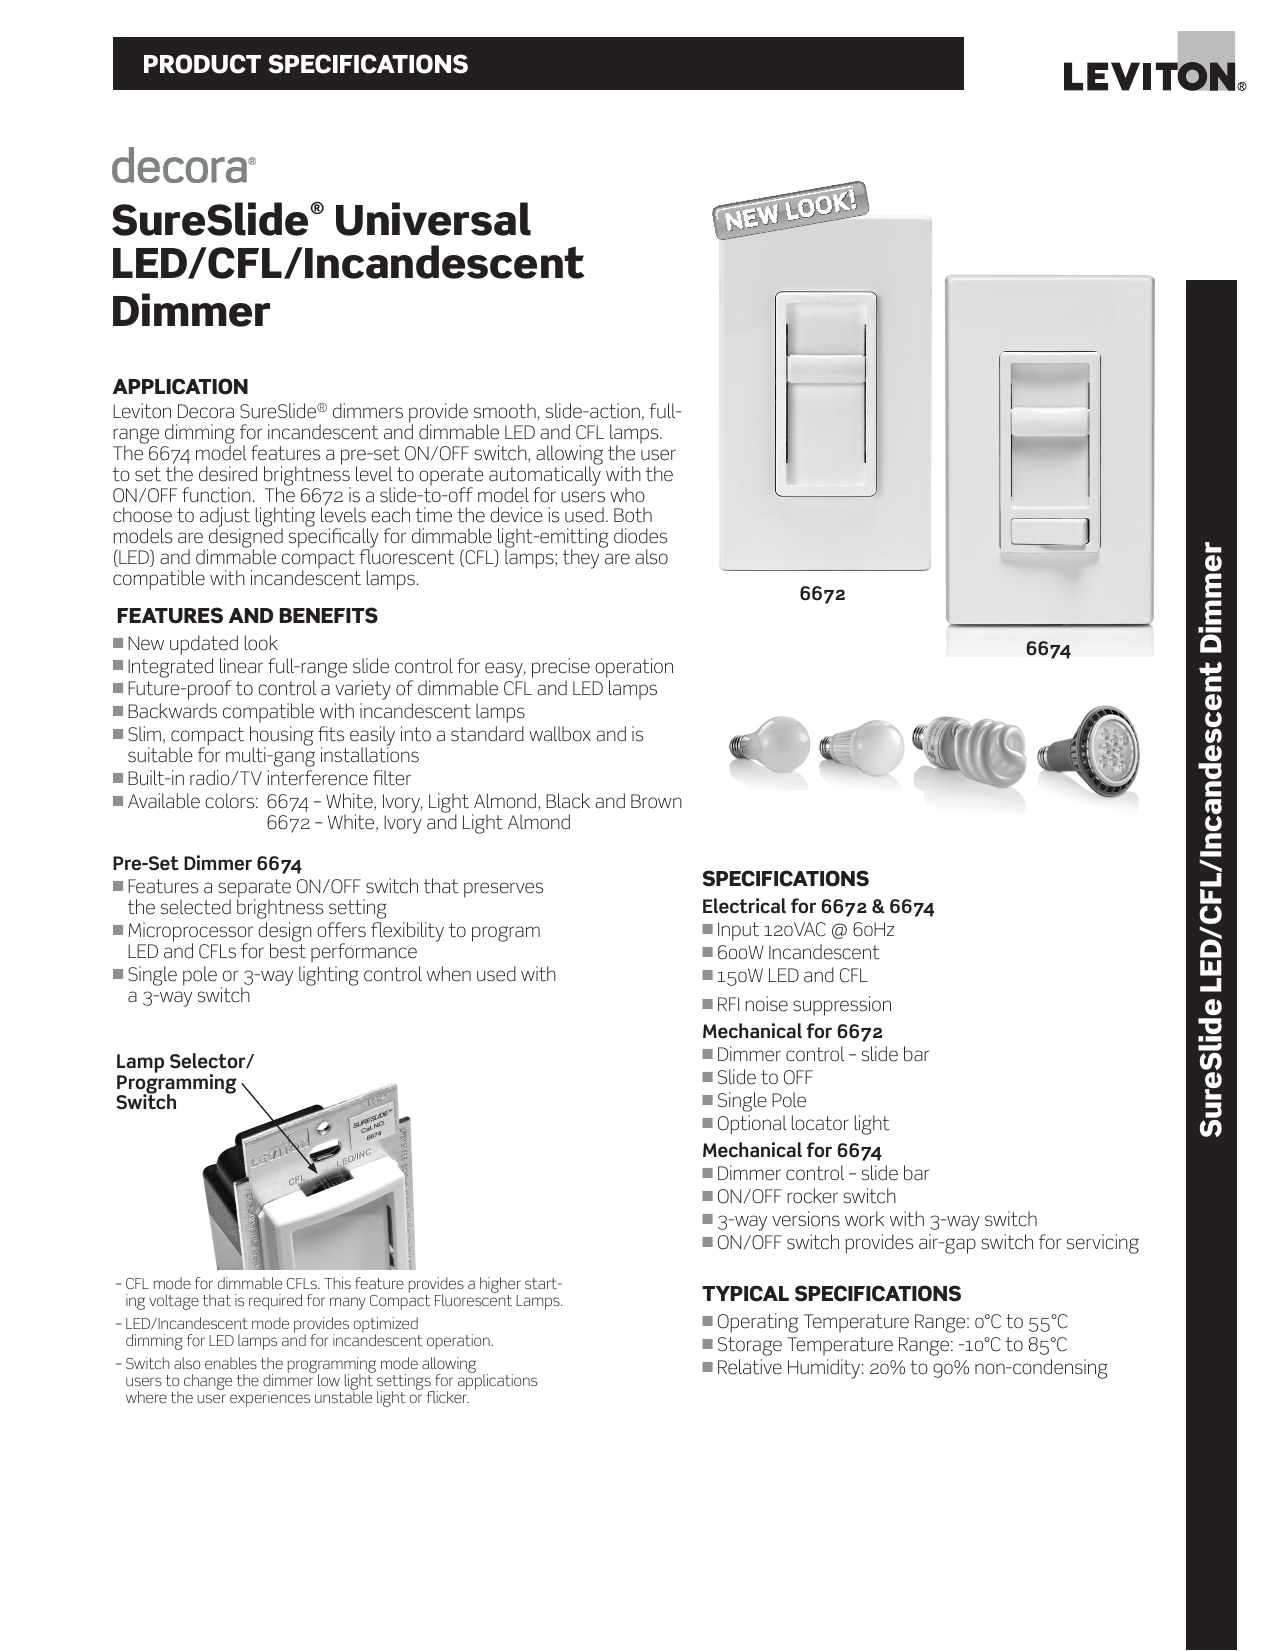 Leviton Ip710 Lfz Wiring Diagram / IP710DLZ Leviton IP710DLZ